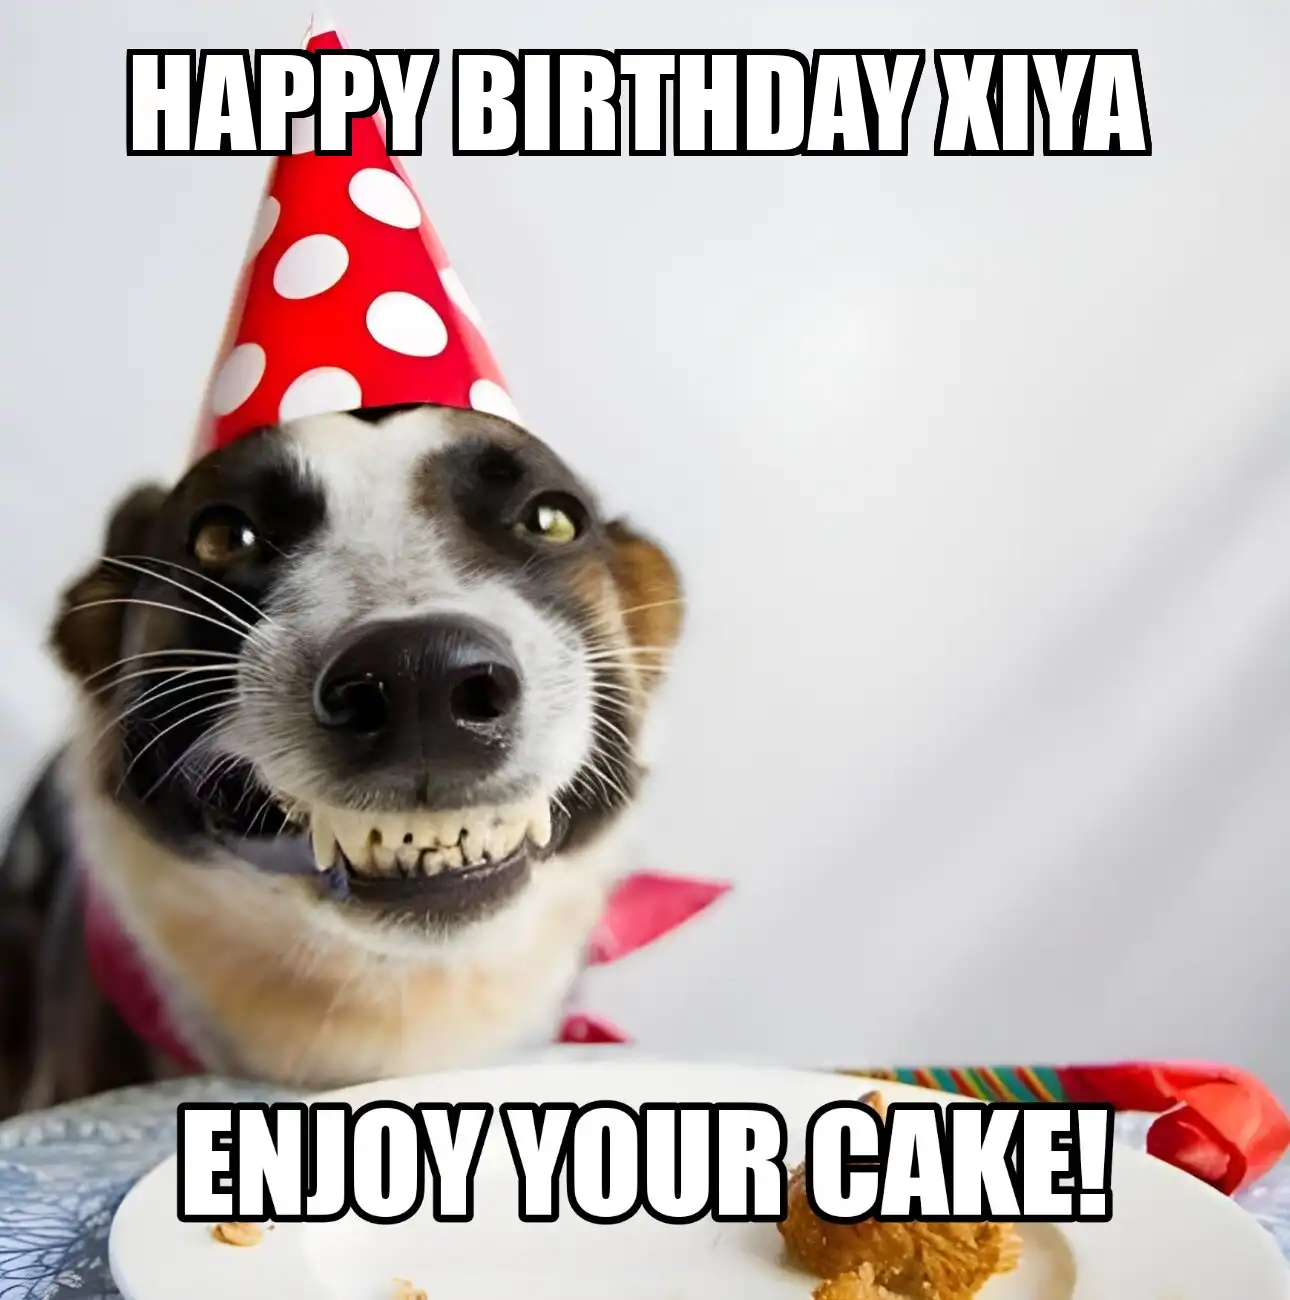 Happy Birthday Xiya Enjoy Your Cake Dog Meme